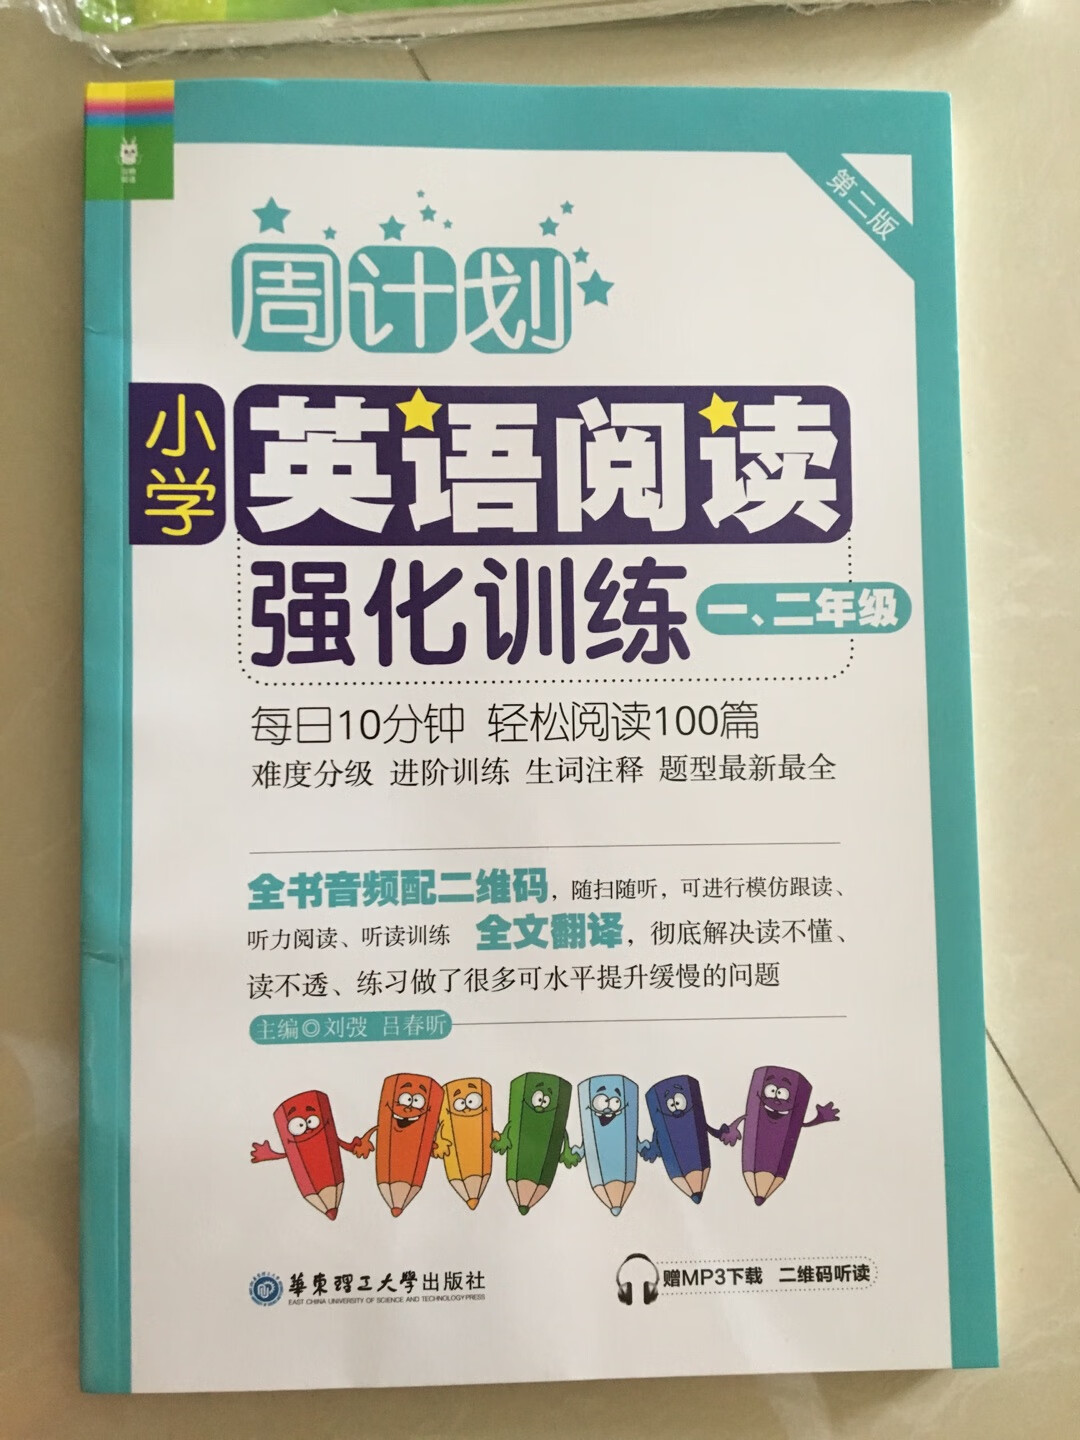 朋友推荐购买此书进一步提升孩子的英语水平，非常不错的一本书。